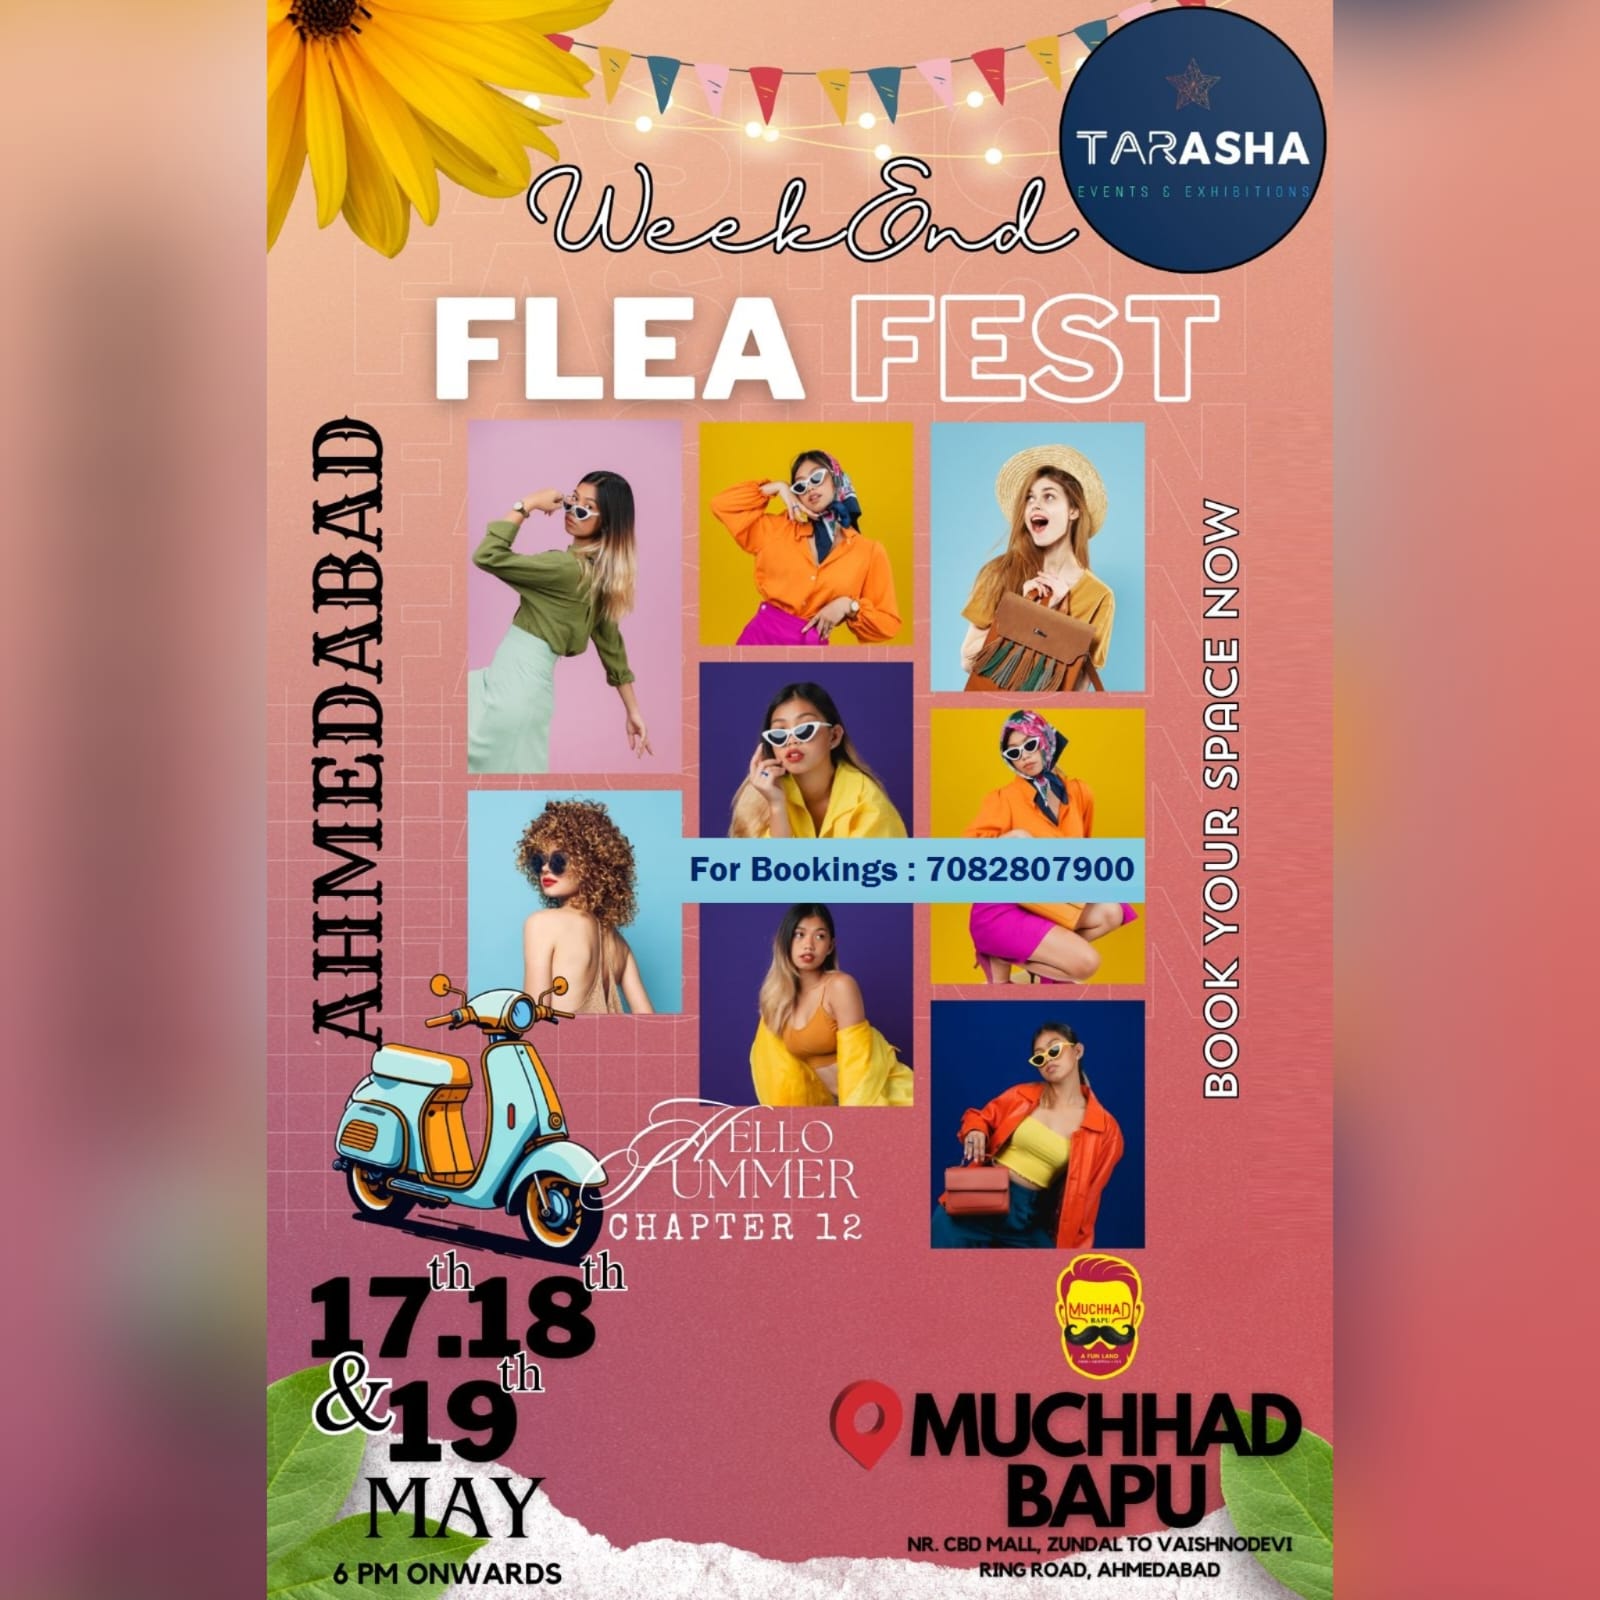 Weekend Flea Fest